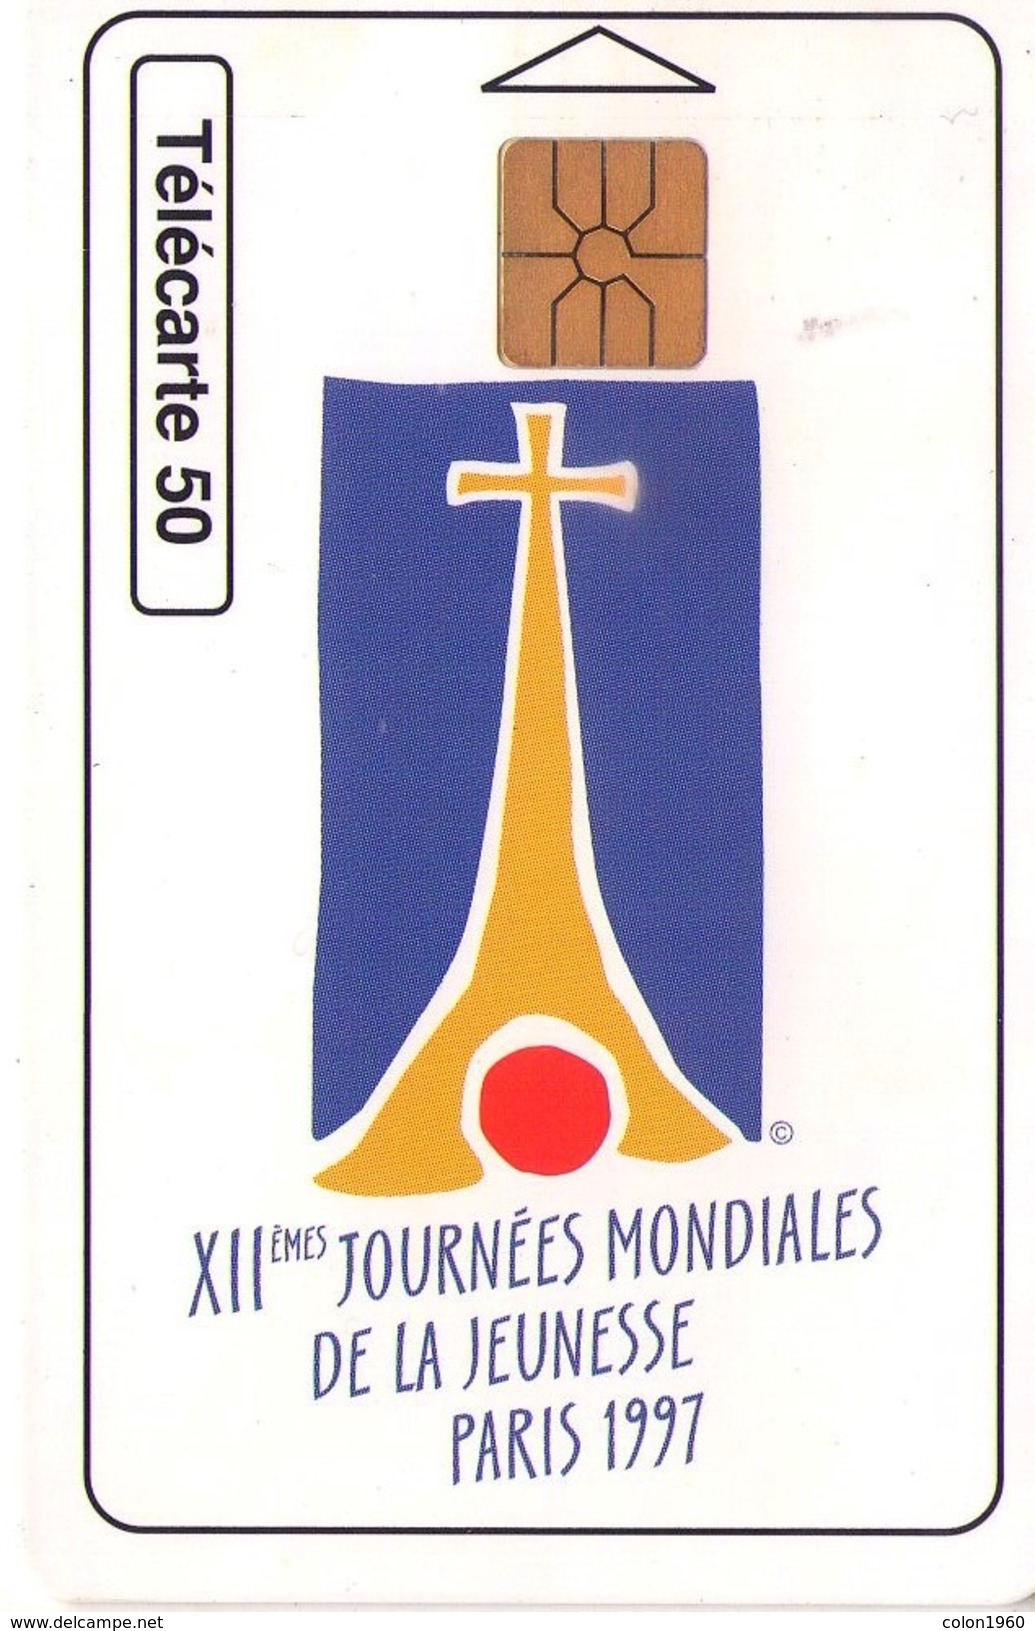 MONACO. XIIe Journées Mondiales De La Jeunesse - Paris 1997. 1997-06. MCO-58 (001). (037) - Monace